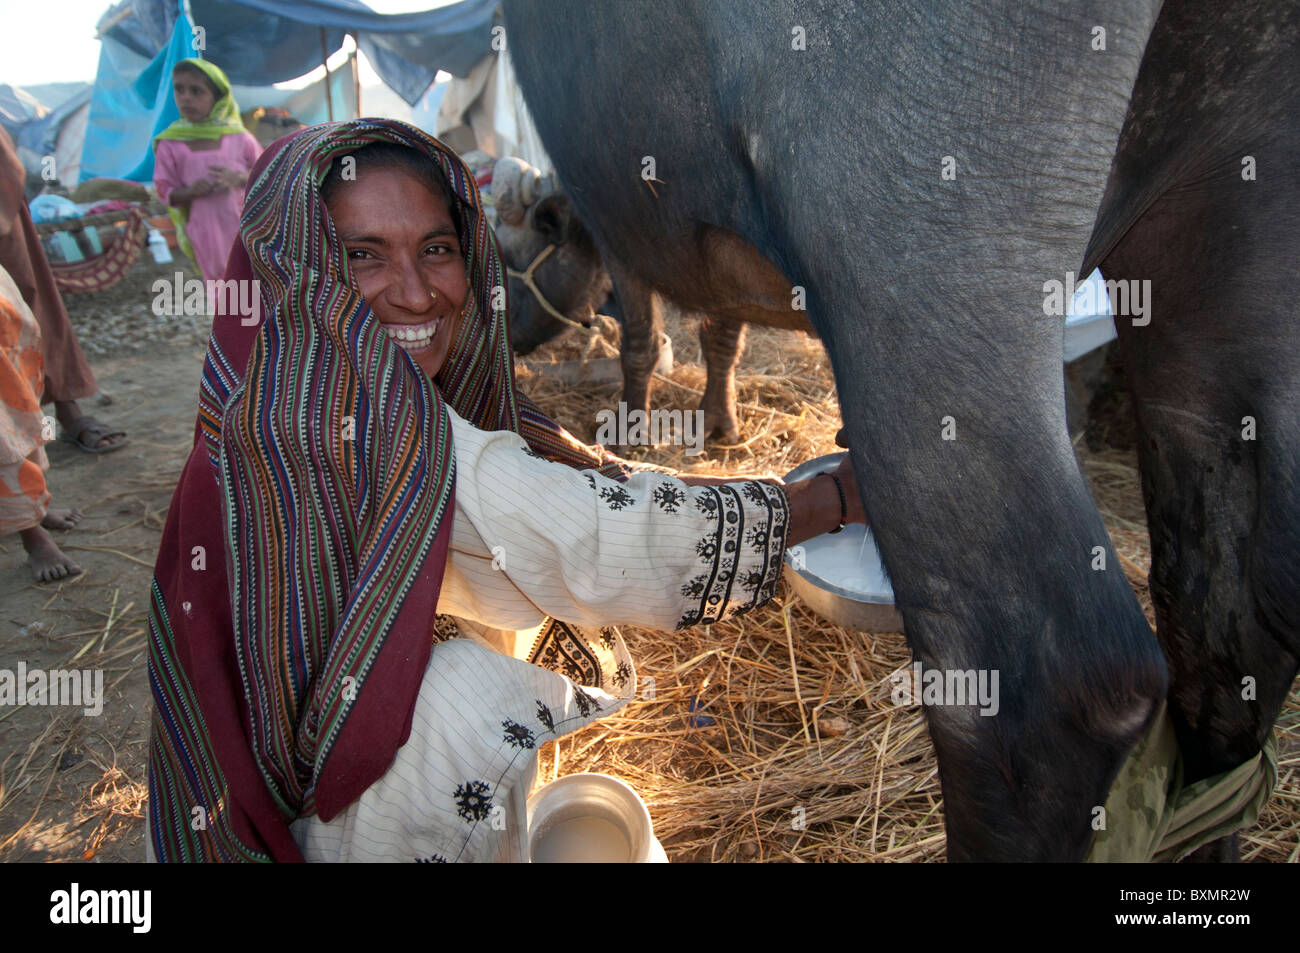 Pakistan Sindh Provinz Shaddat Kot. Nach der Flut. Dezember 2010. Kaima Maqsi, die Familie Kuh zu melken. Sie hat 4 Kinder. Stockfoto